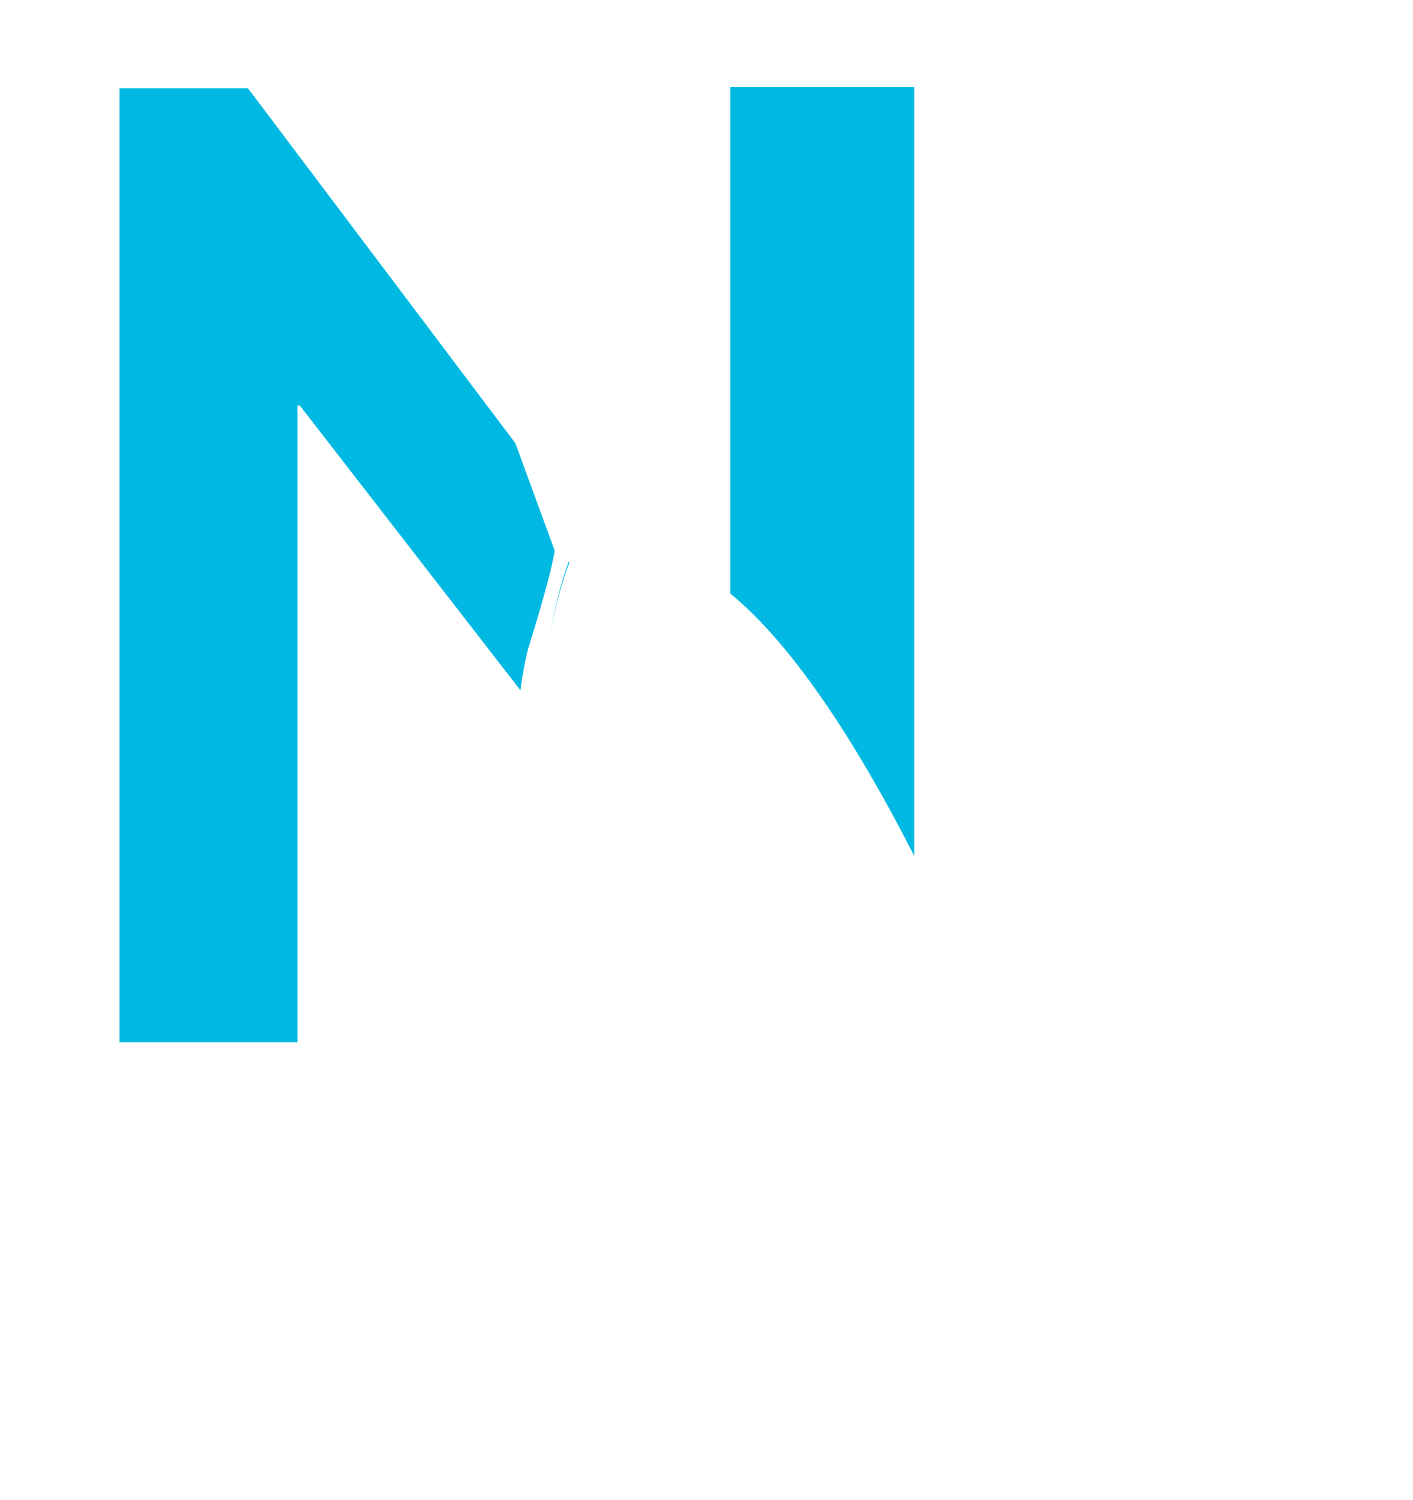 Narwhal Design | Build